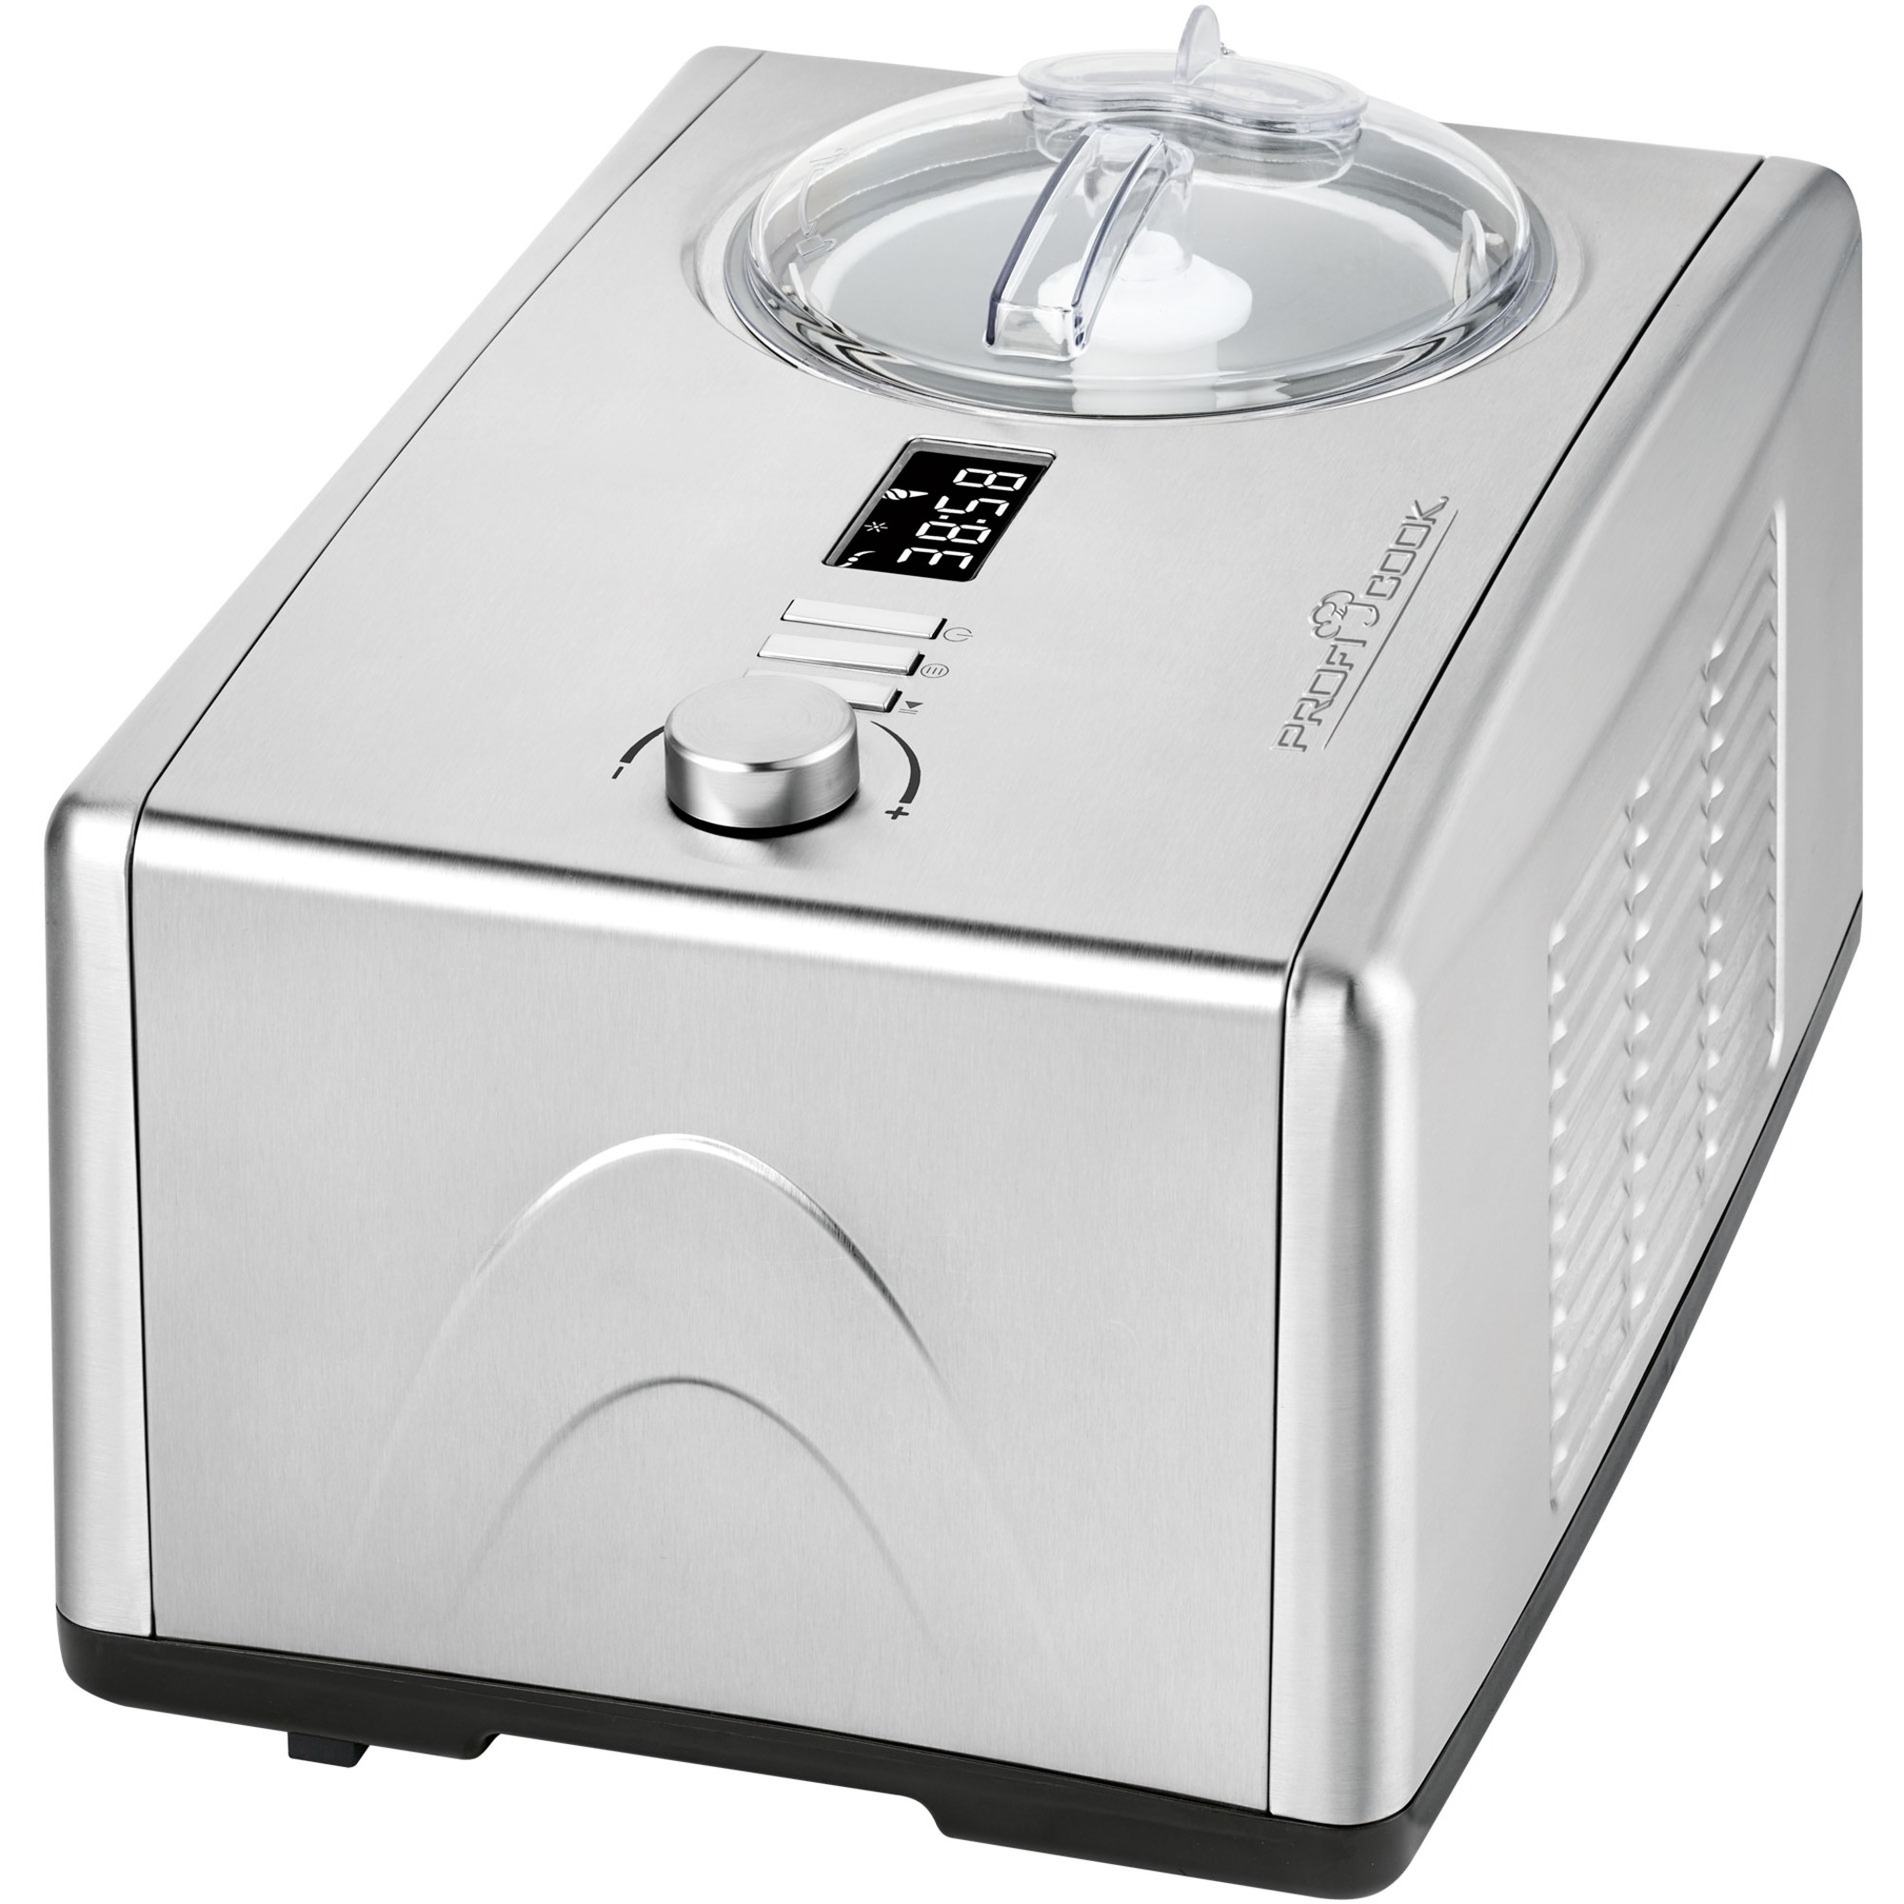 Image of Alternate - 2in1 - Eiscremeautomat und Joghurtmaker PC-ICM 1091 N, Eismaschine online einkaufen bei Alternate